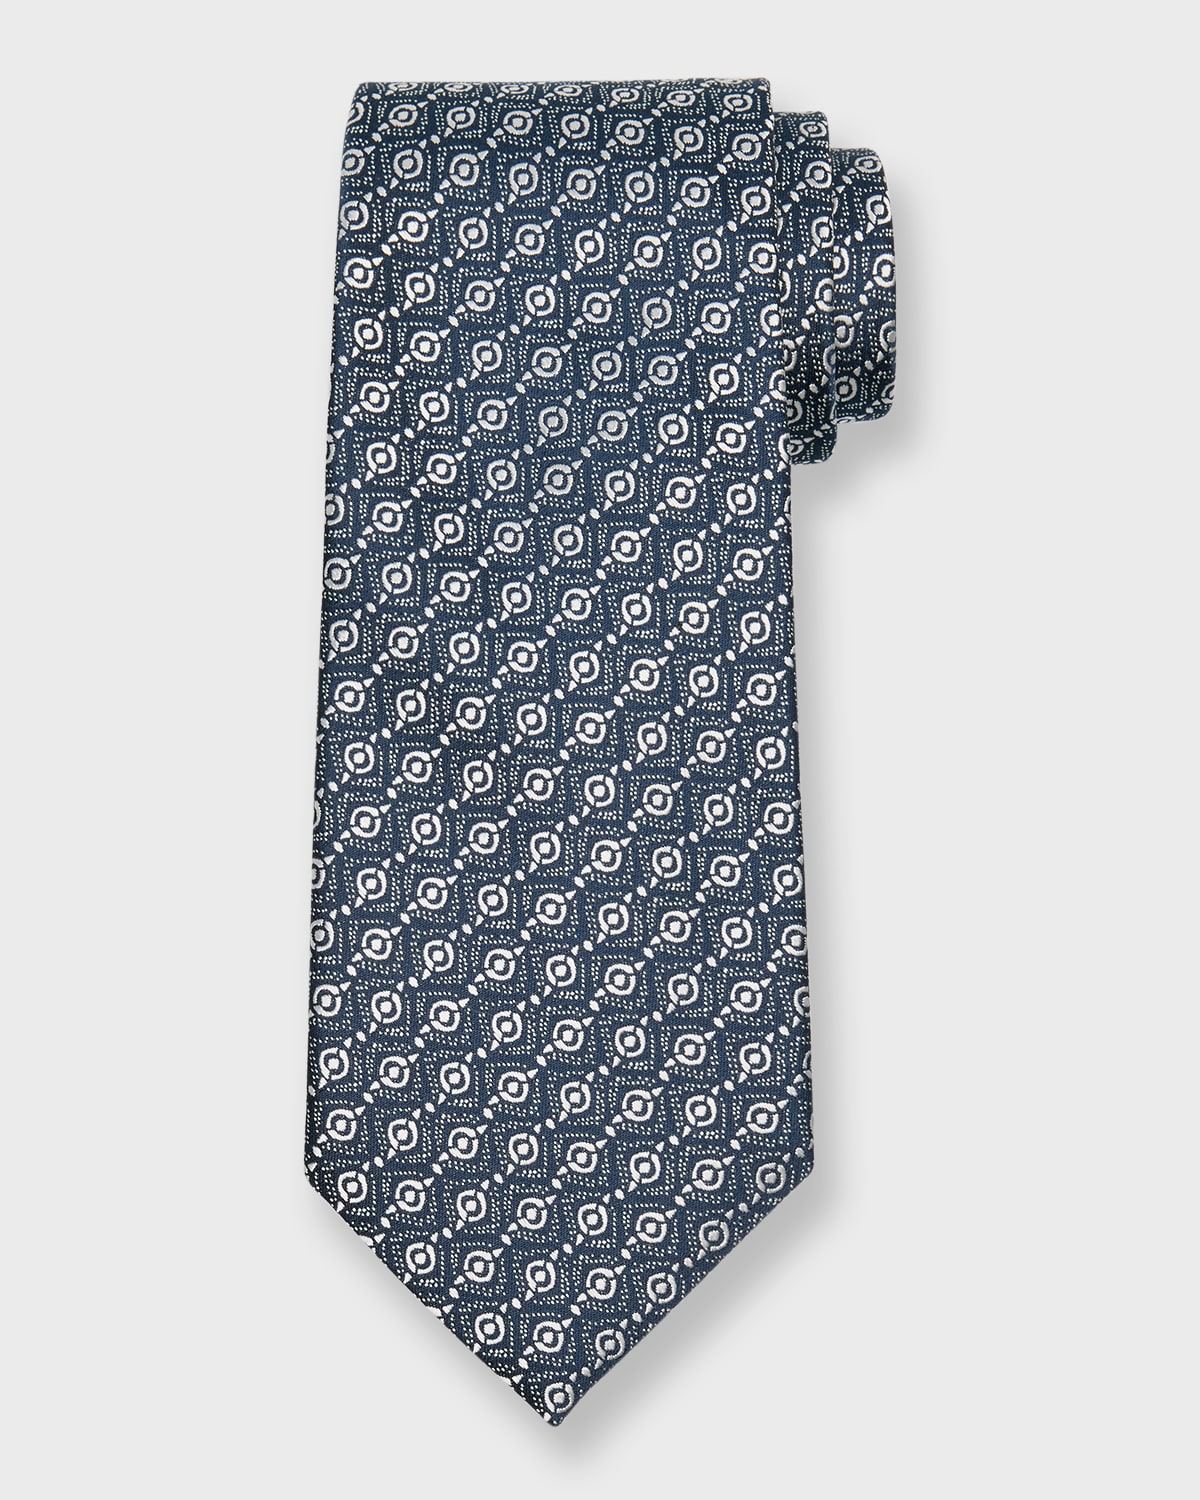 Men's Woven Geometric Silk Tie